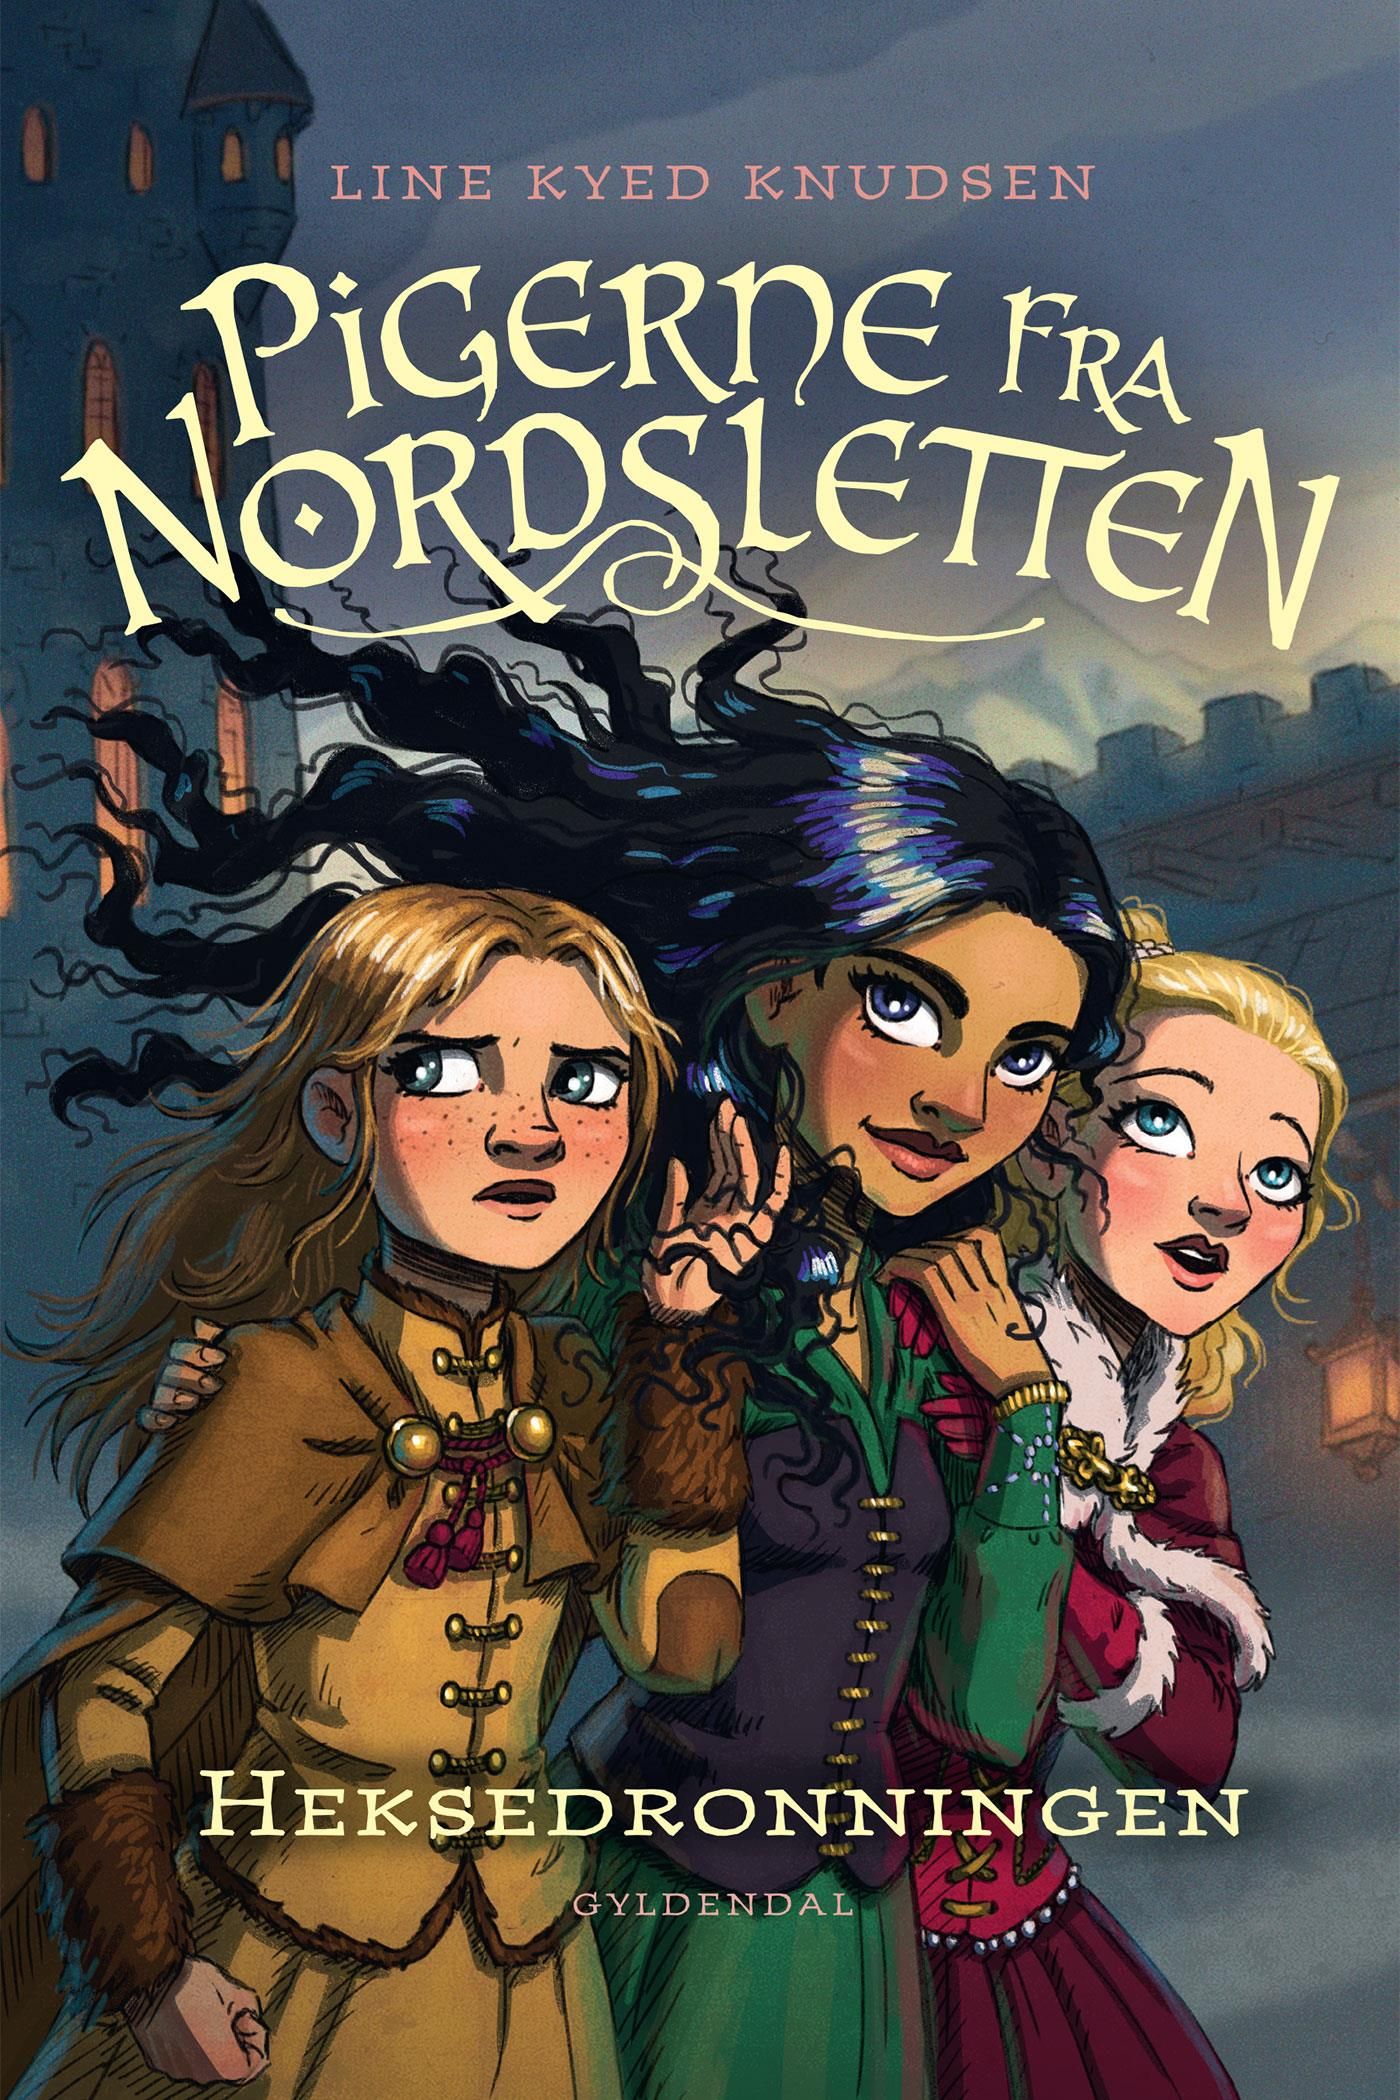 Pigerne fra Nordsletten 2 - Heksedronningen, e-bog af Line Kyed Knudsen